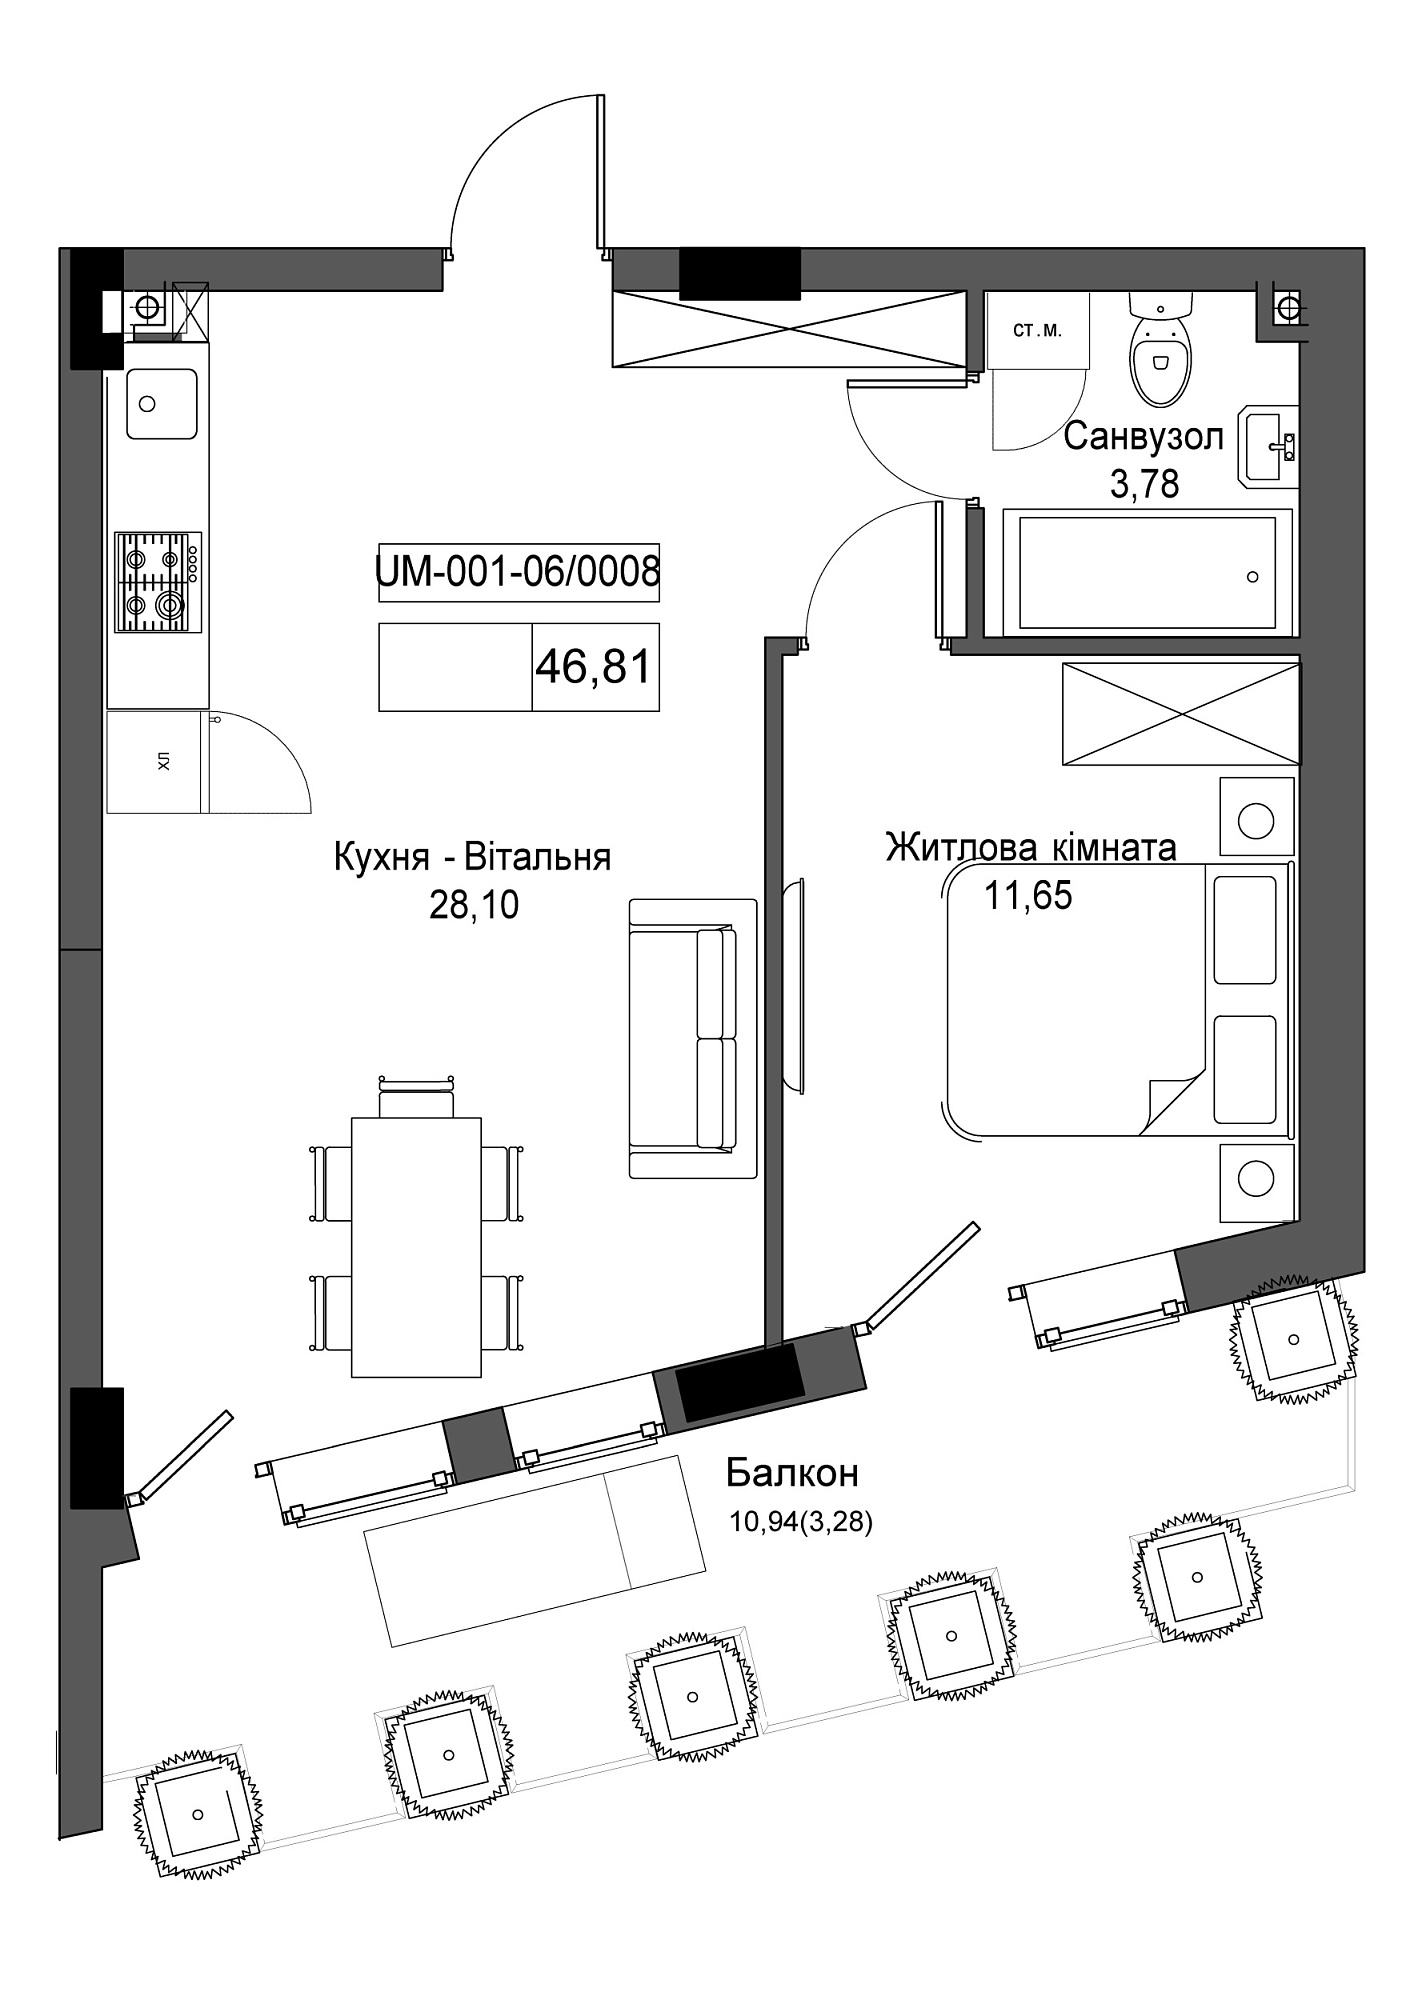 Планировка 1-к квартира площей 46.81м2, UM-001-06/0008.